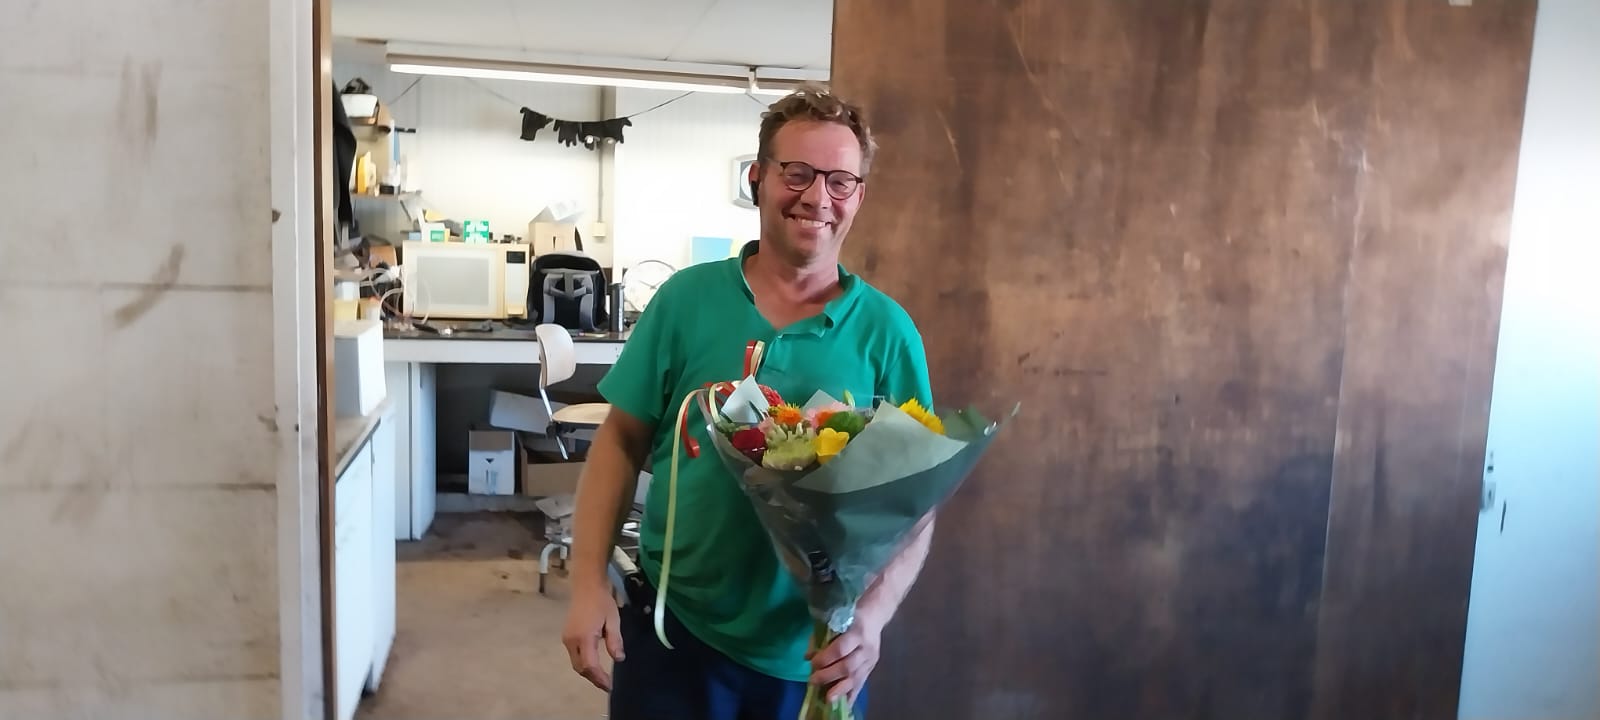 man ontvangt bloemen omdat hij genomineerd is voor de Hartstikke Sociaal Bokaal